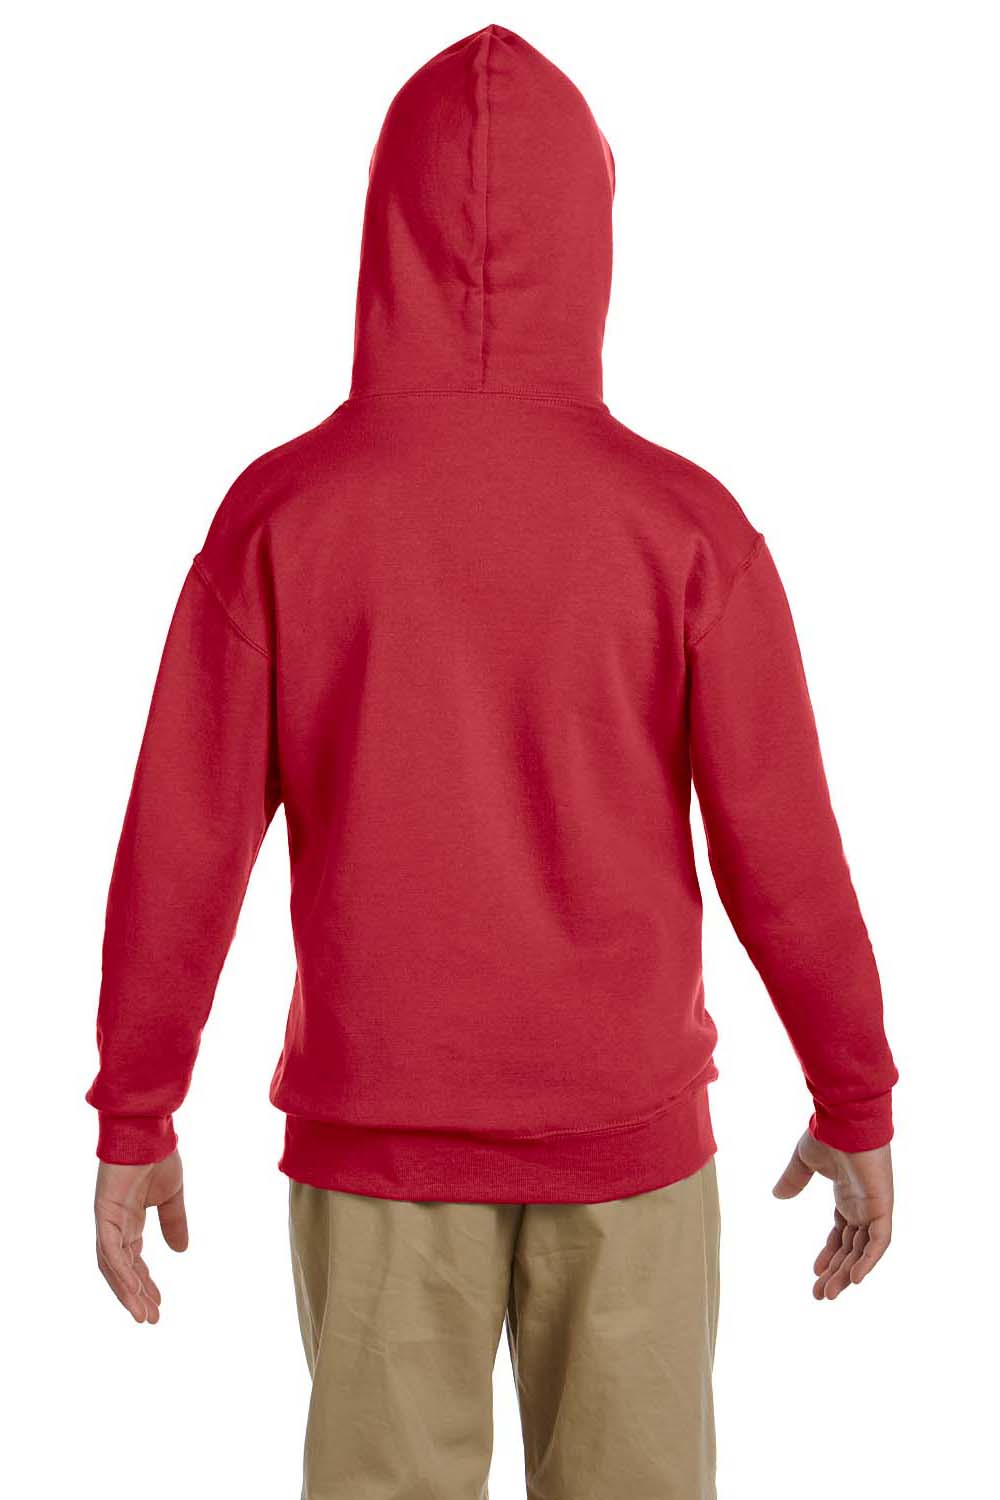 Jerzees 996Y Youth NuBlend Fleece Hooded Sweatshirt Hoodie Red Back